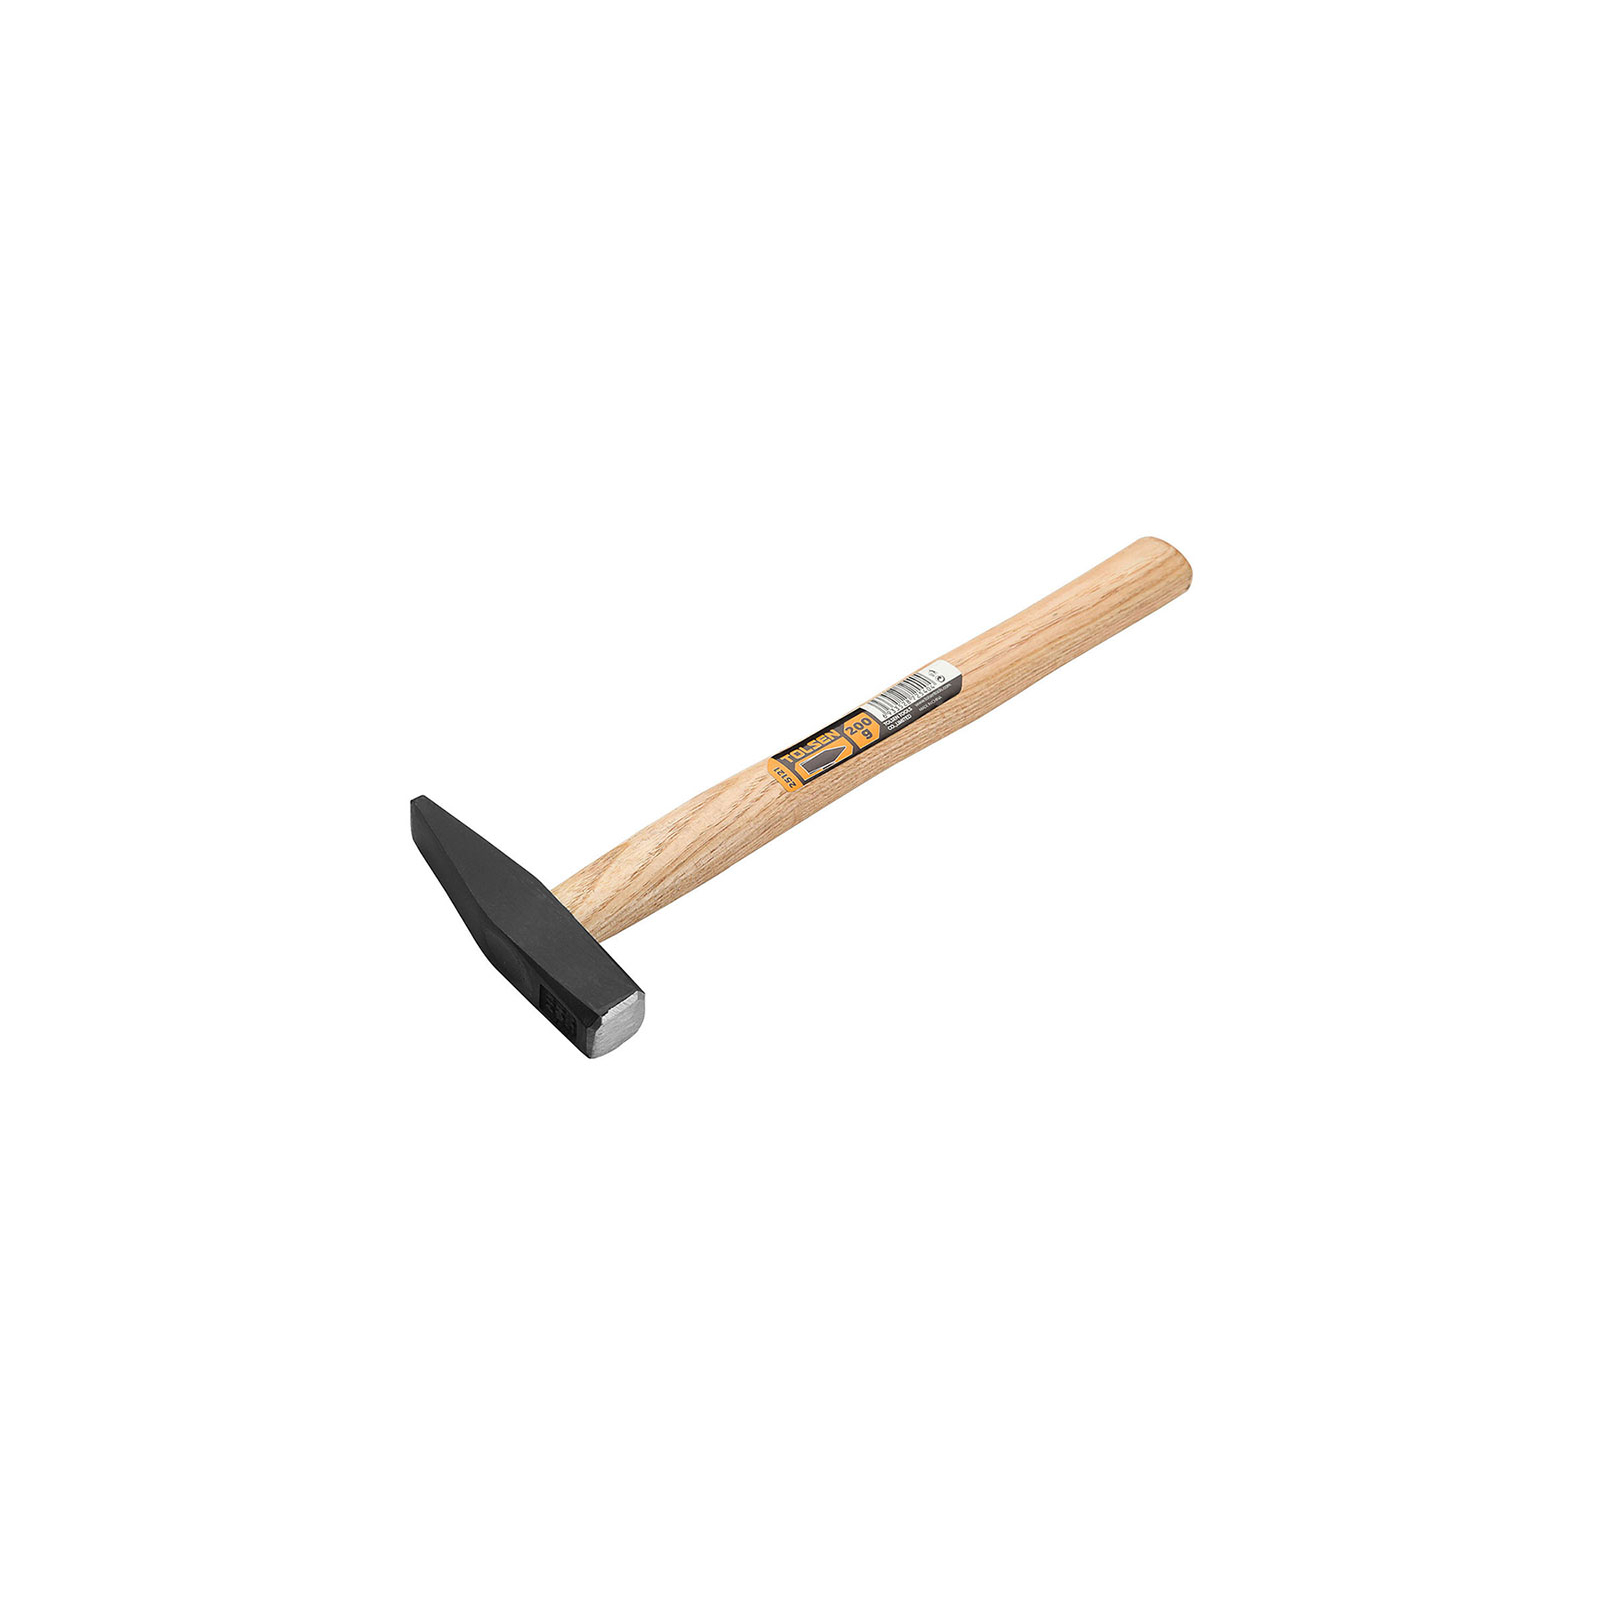 Молоток Tolsen слесарный деревяная ручка 1 кг (25124)